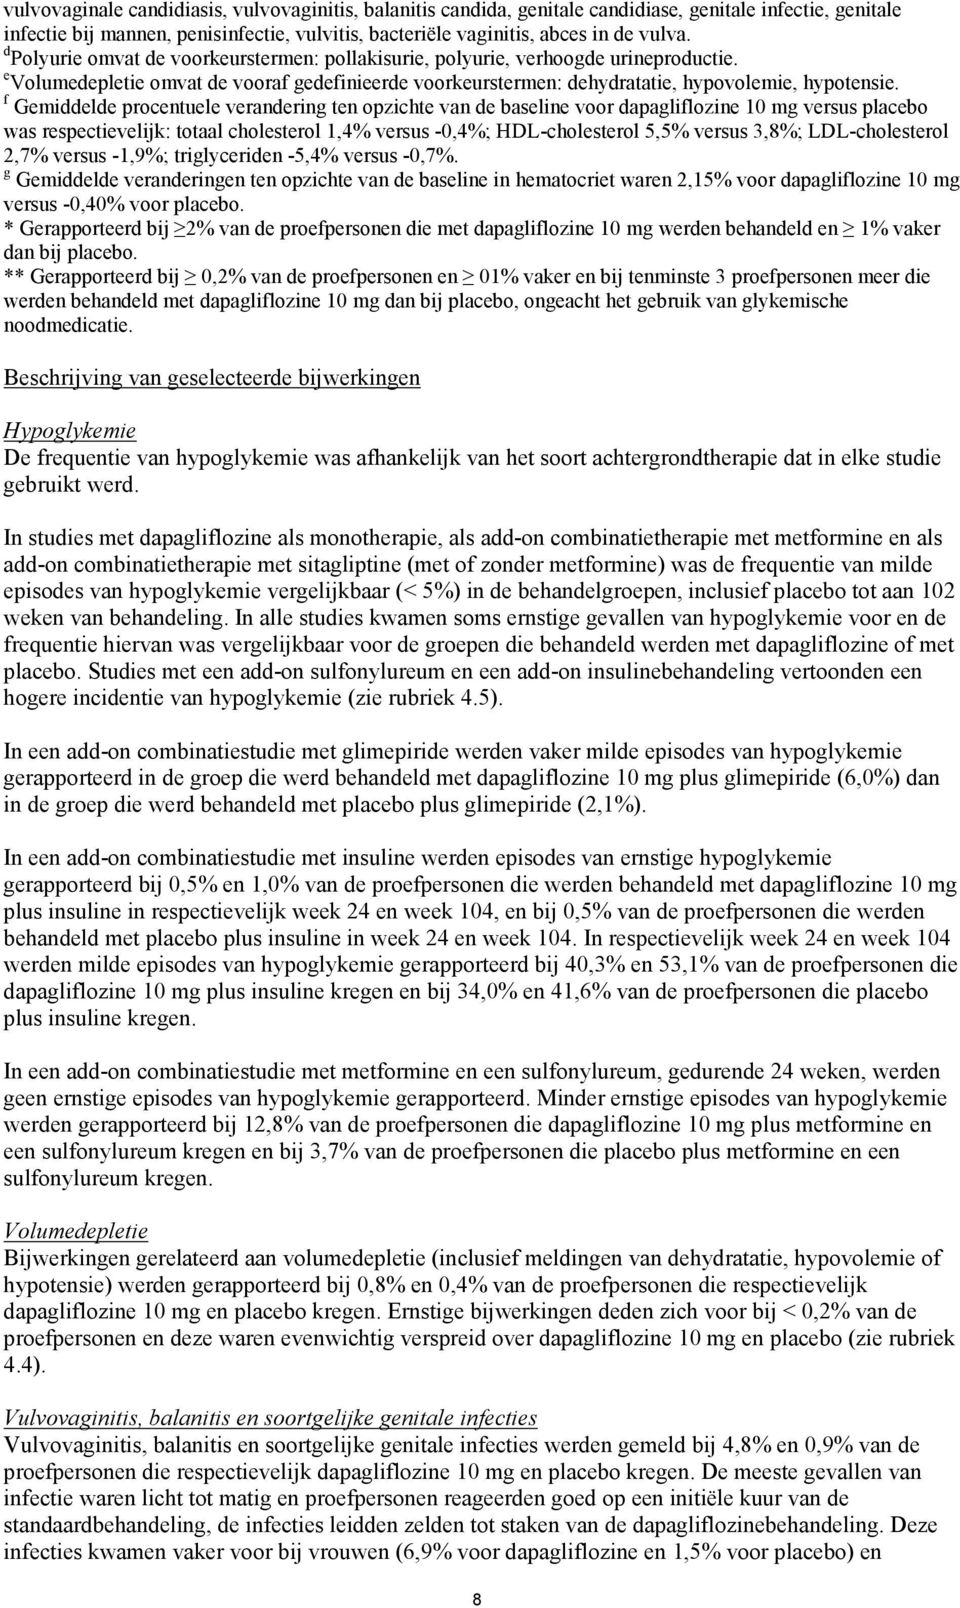 f Gemiddelde procentuele verandering ten opzichte van de baseline voor dapagliflozine 10 mg versus placebo was respectievelijk: totaal cholesterol 1,4% versus -0,4%; HDL-cholesterol 5,5% versus 3,8%;